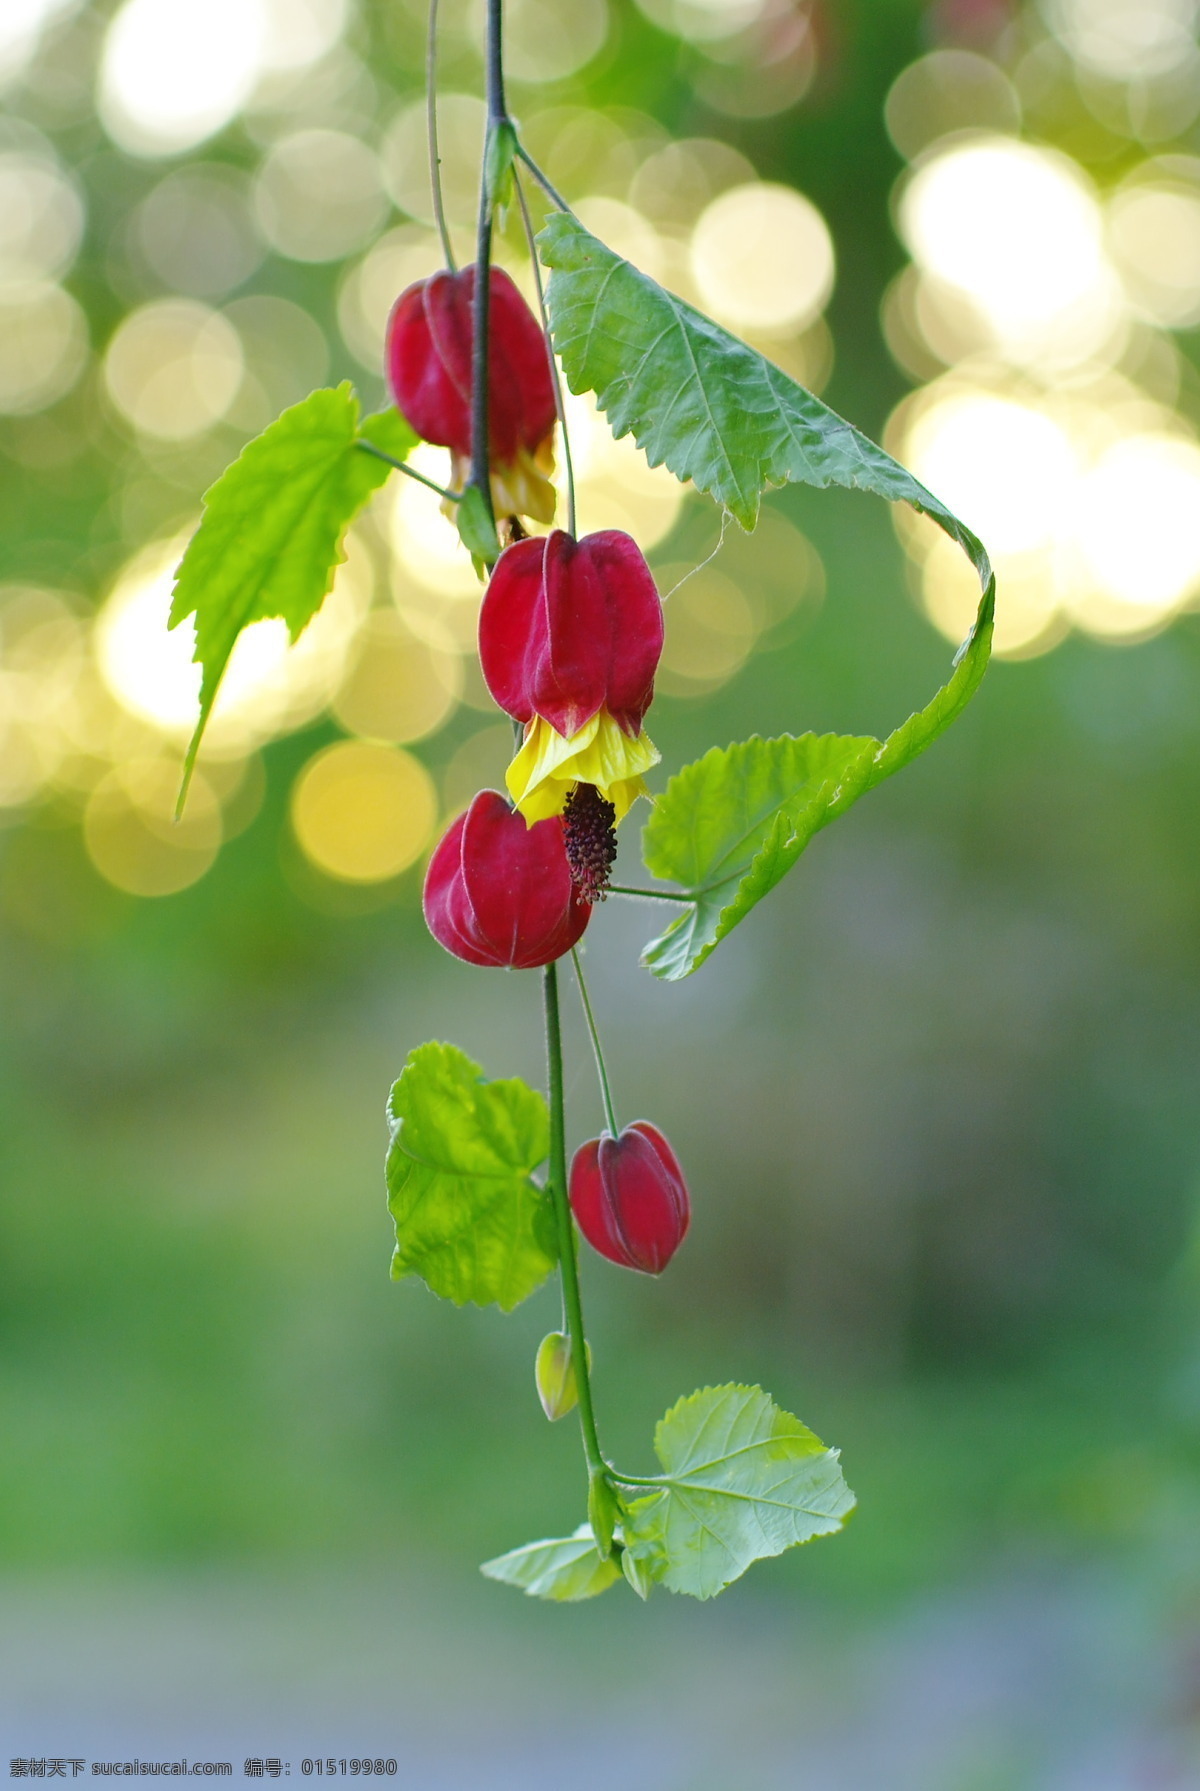 红姑娘 背景 叶子 特写 红色 果实 摄影图库 果树果实 水果 生物世界